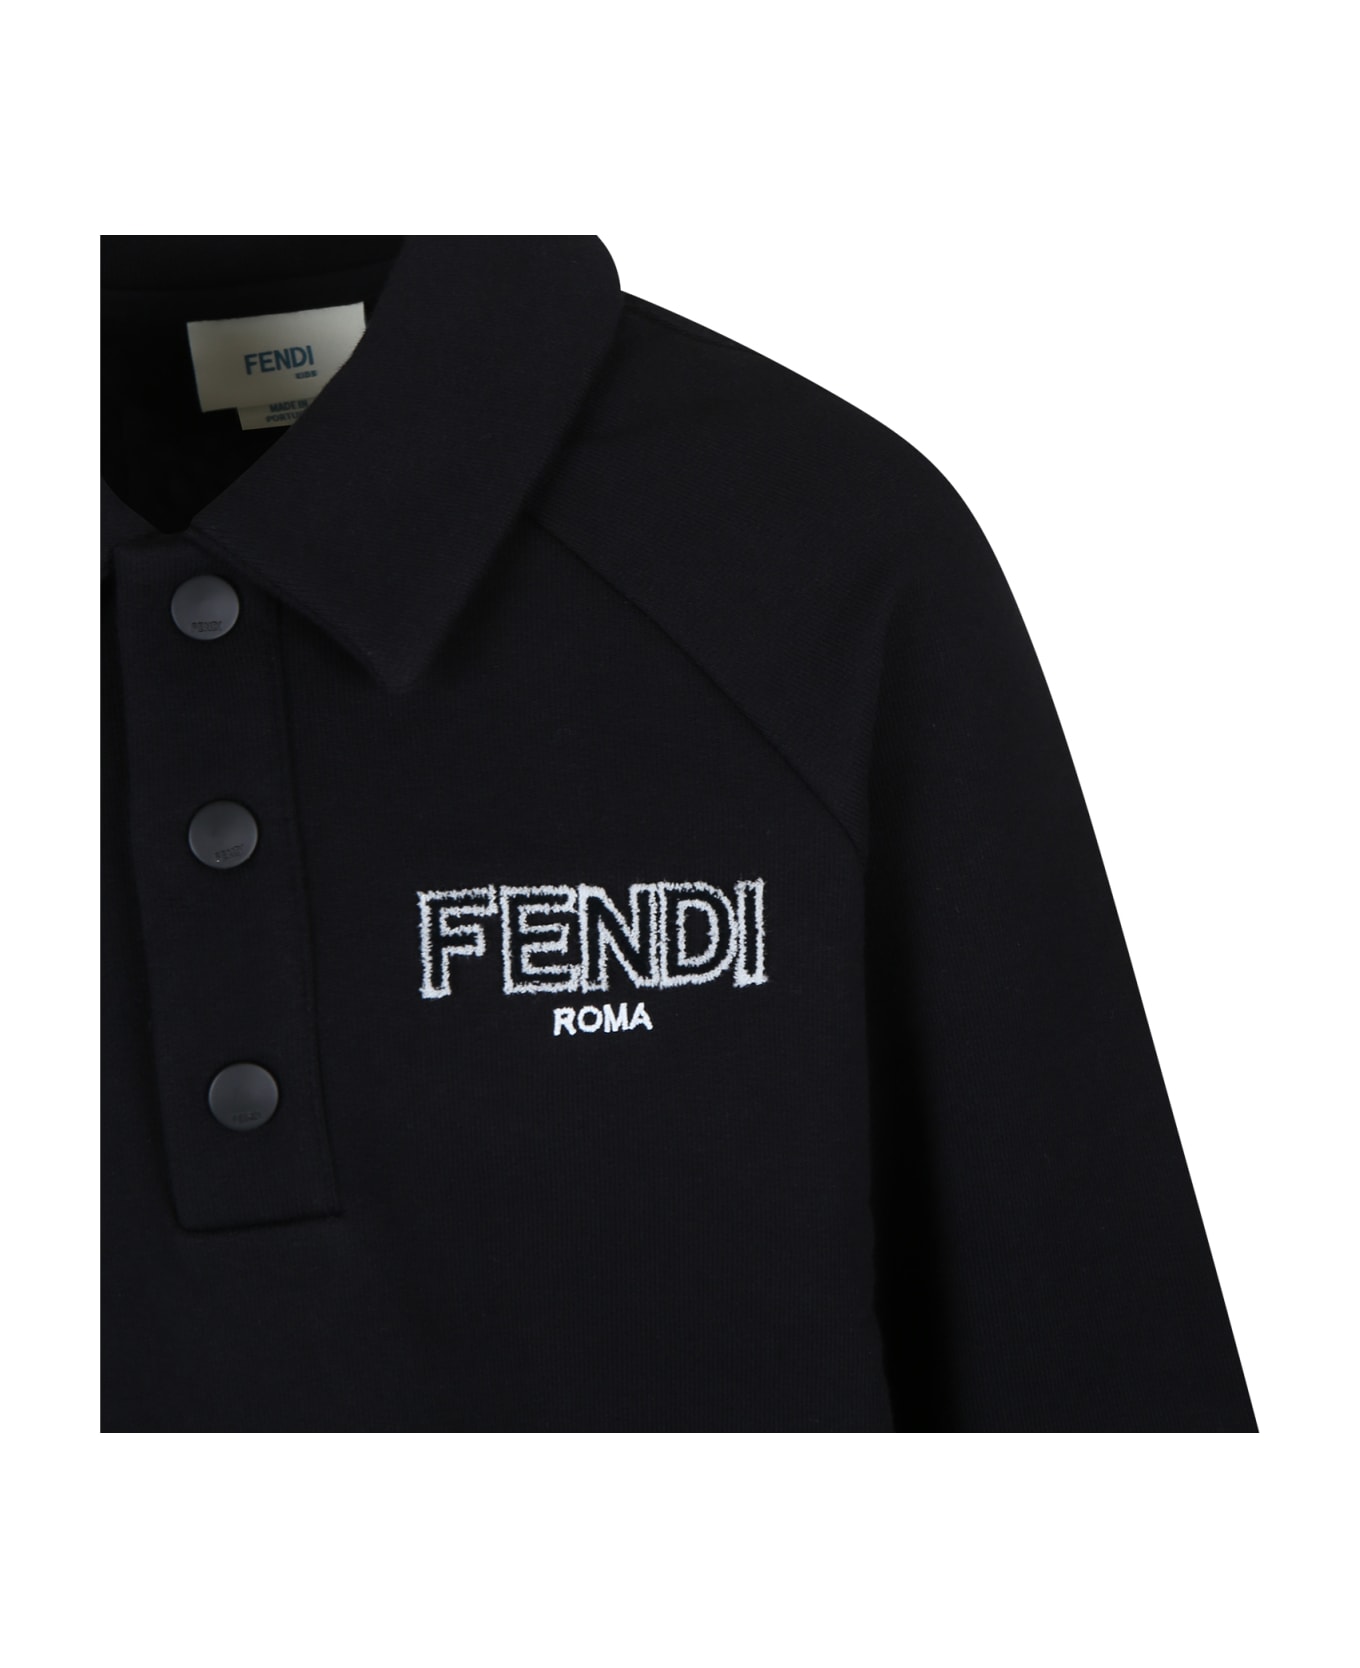 Fendi Black Sweatshirt For Boy With Fendi Logo - Black